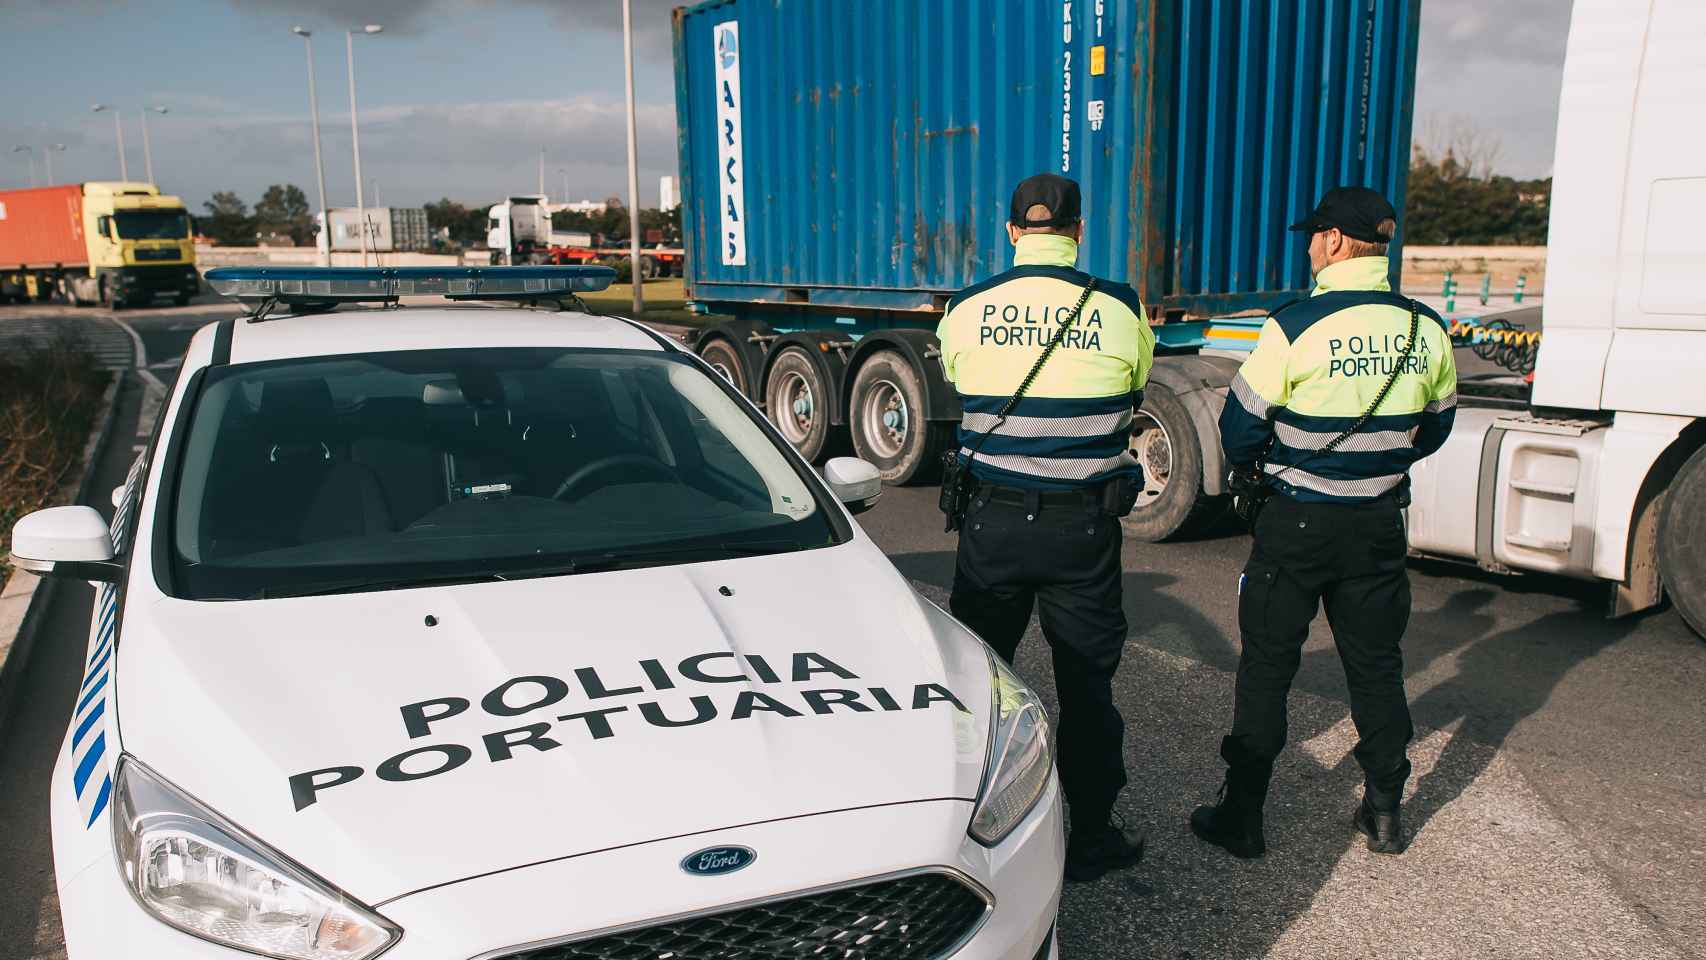 La Policía portuaria examina un camión.